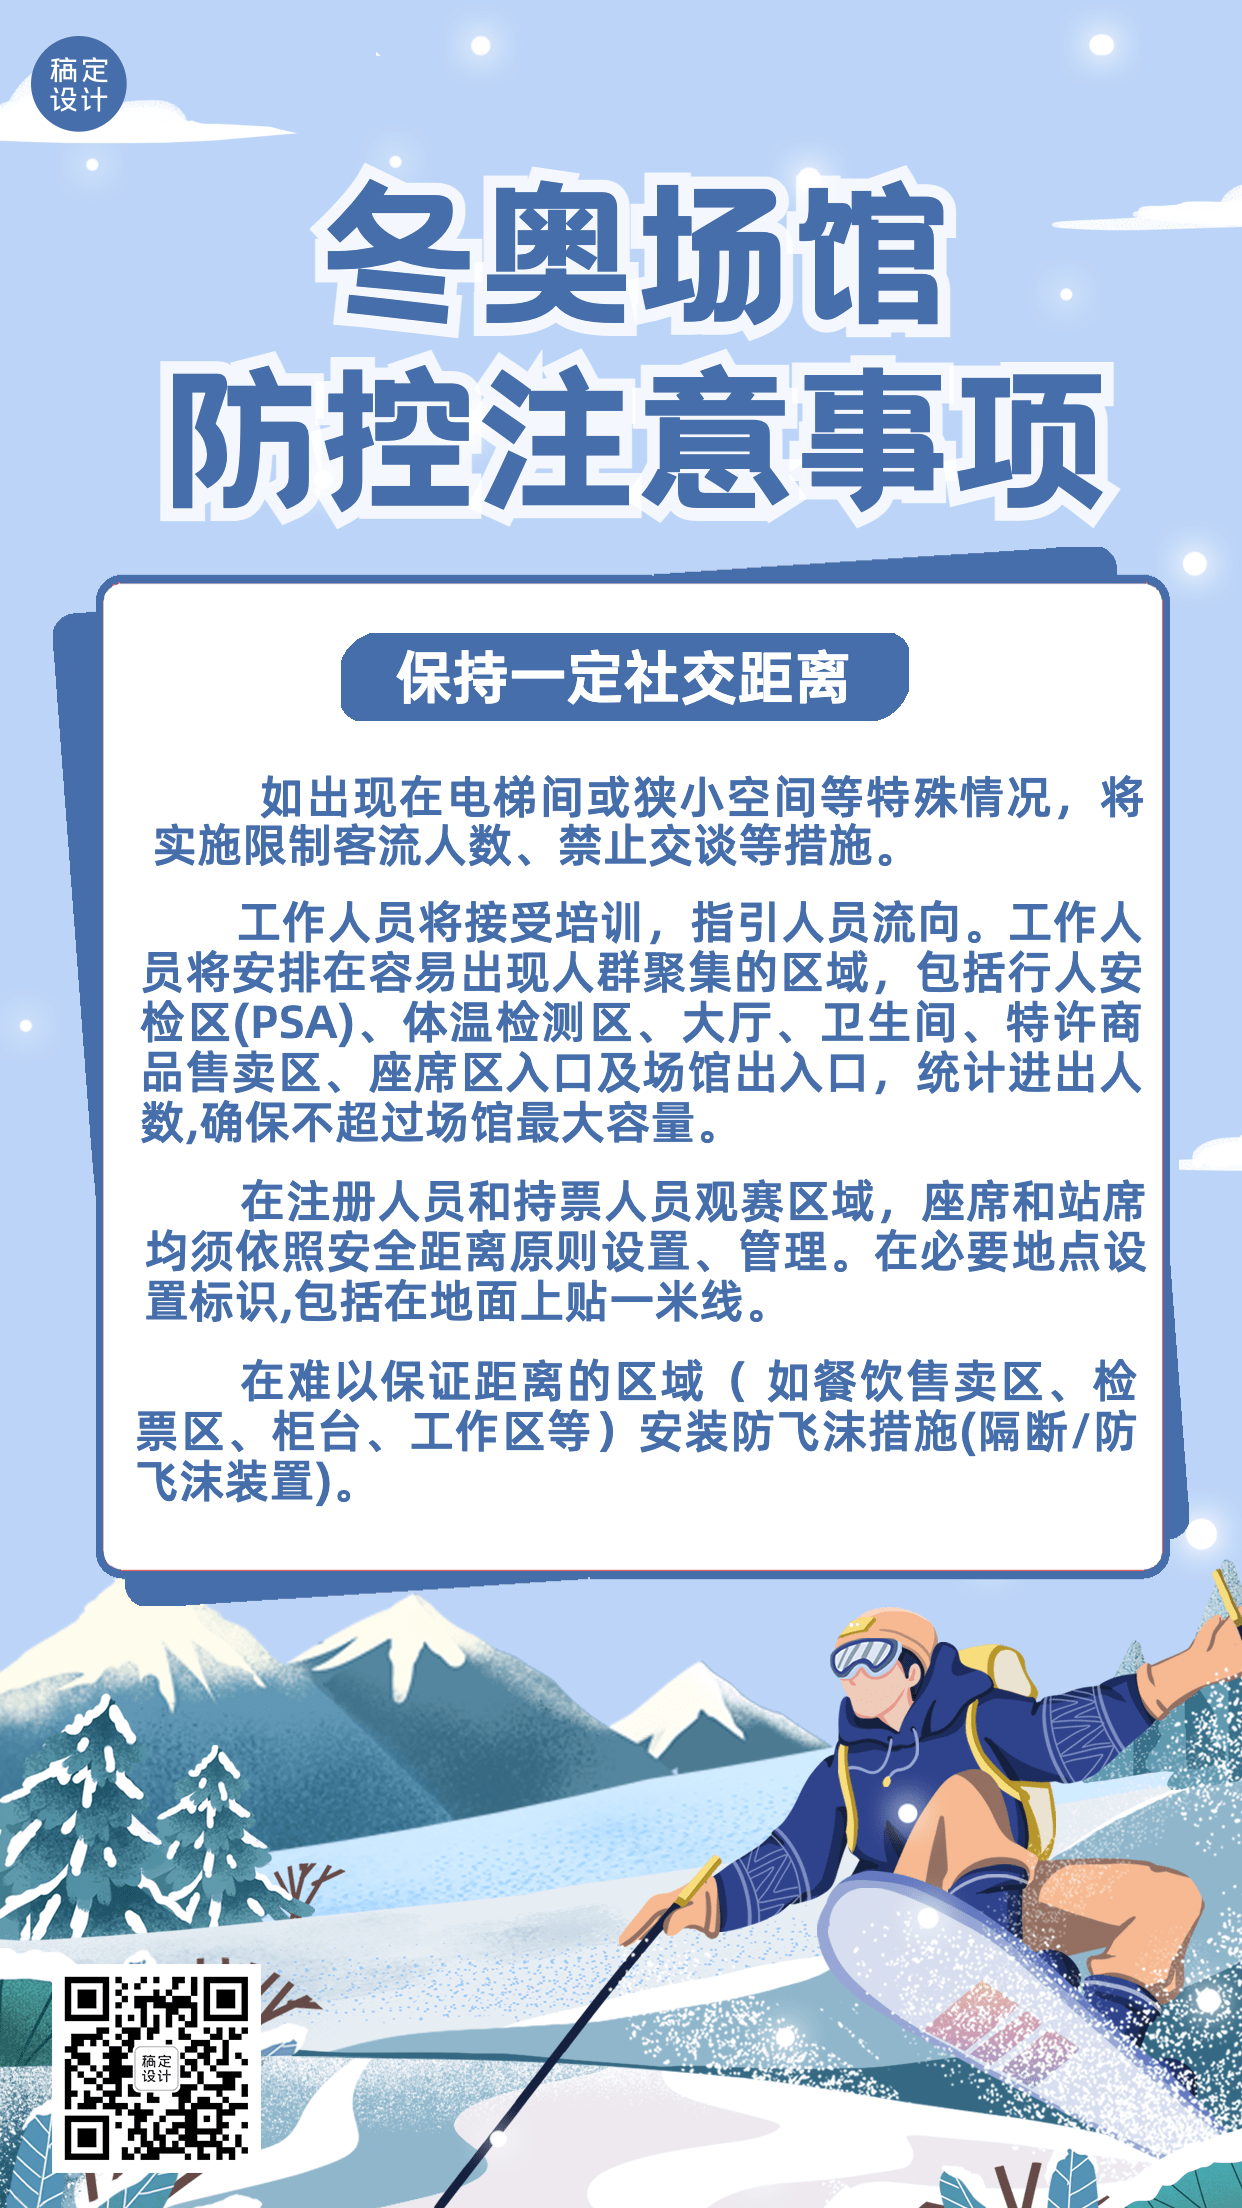 北京冬奥会疫情防控政策措施通知公告提示须知融媒体手机海报预览效果